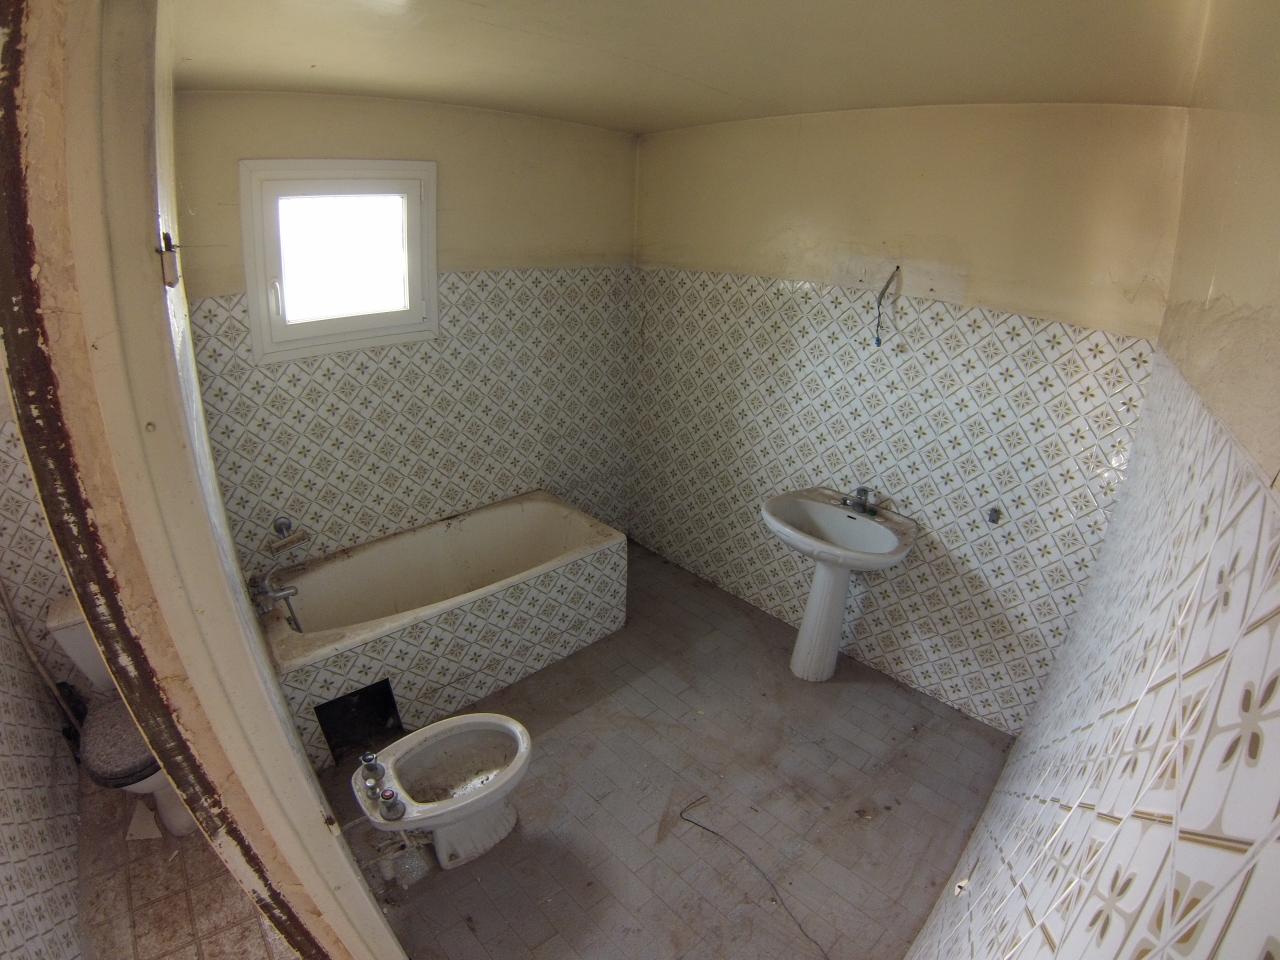 Rénovation salle de bain AVANT 